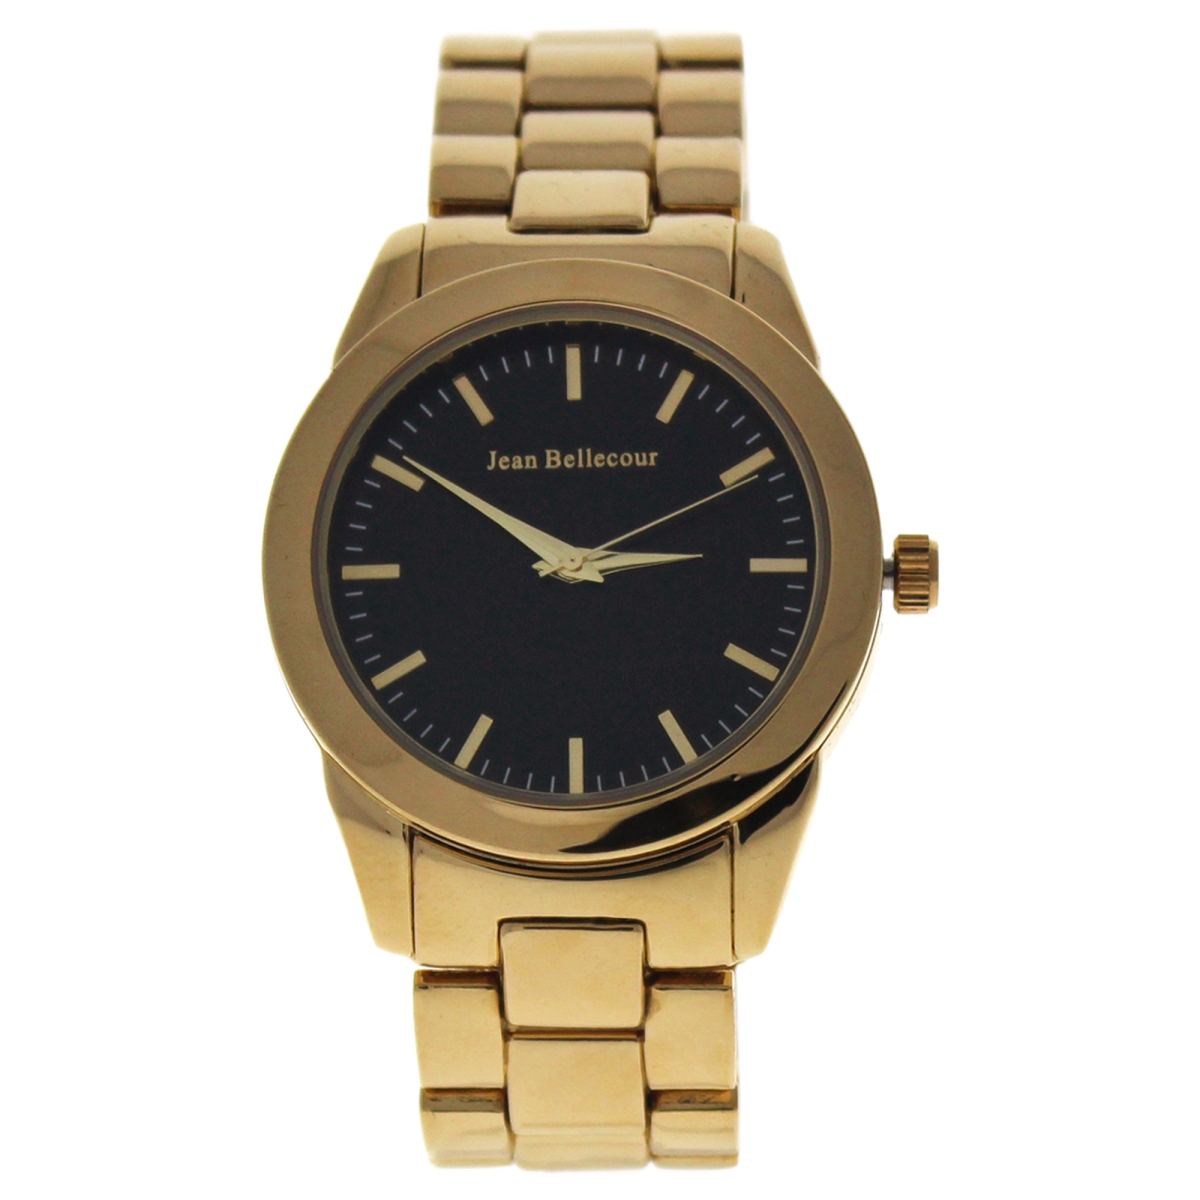 W-wat-1537 Gold Stainless Steel Bracelet Watch For Women - A0372-4